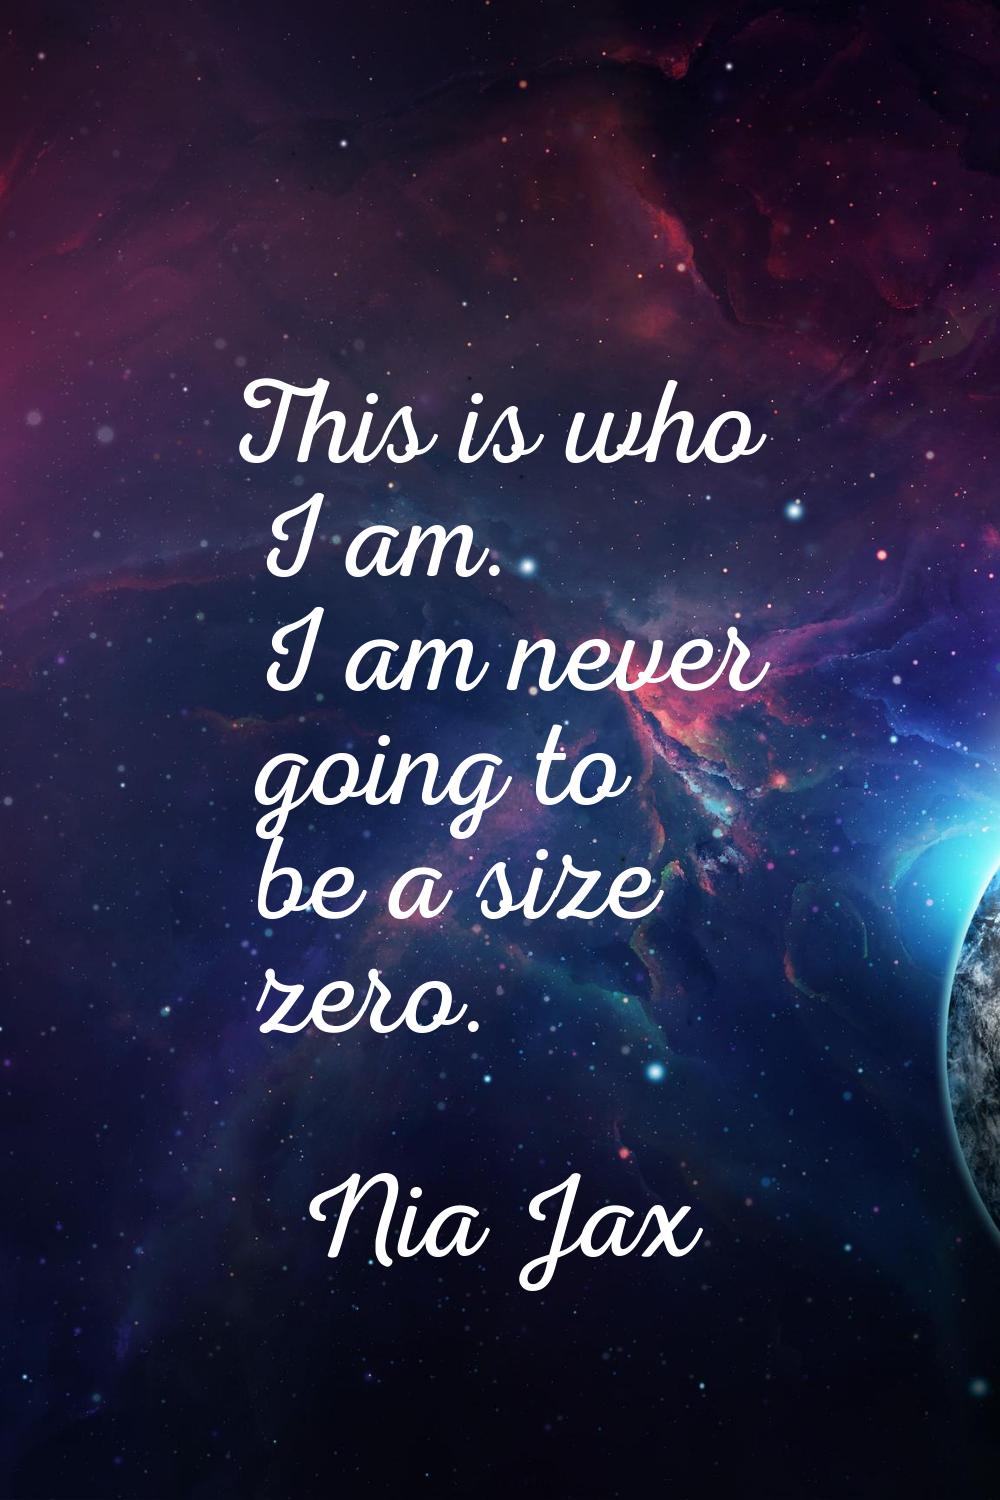 This is who I am. I am never going to be a size zero.